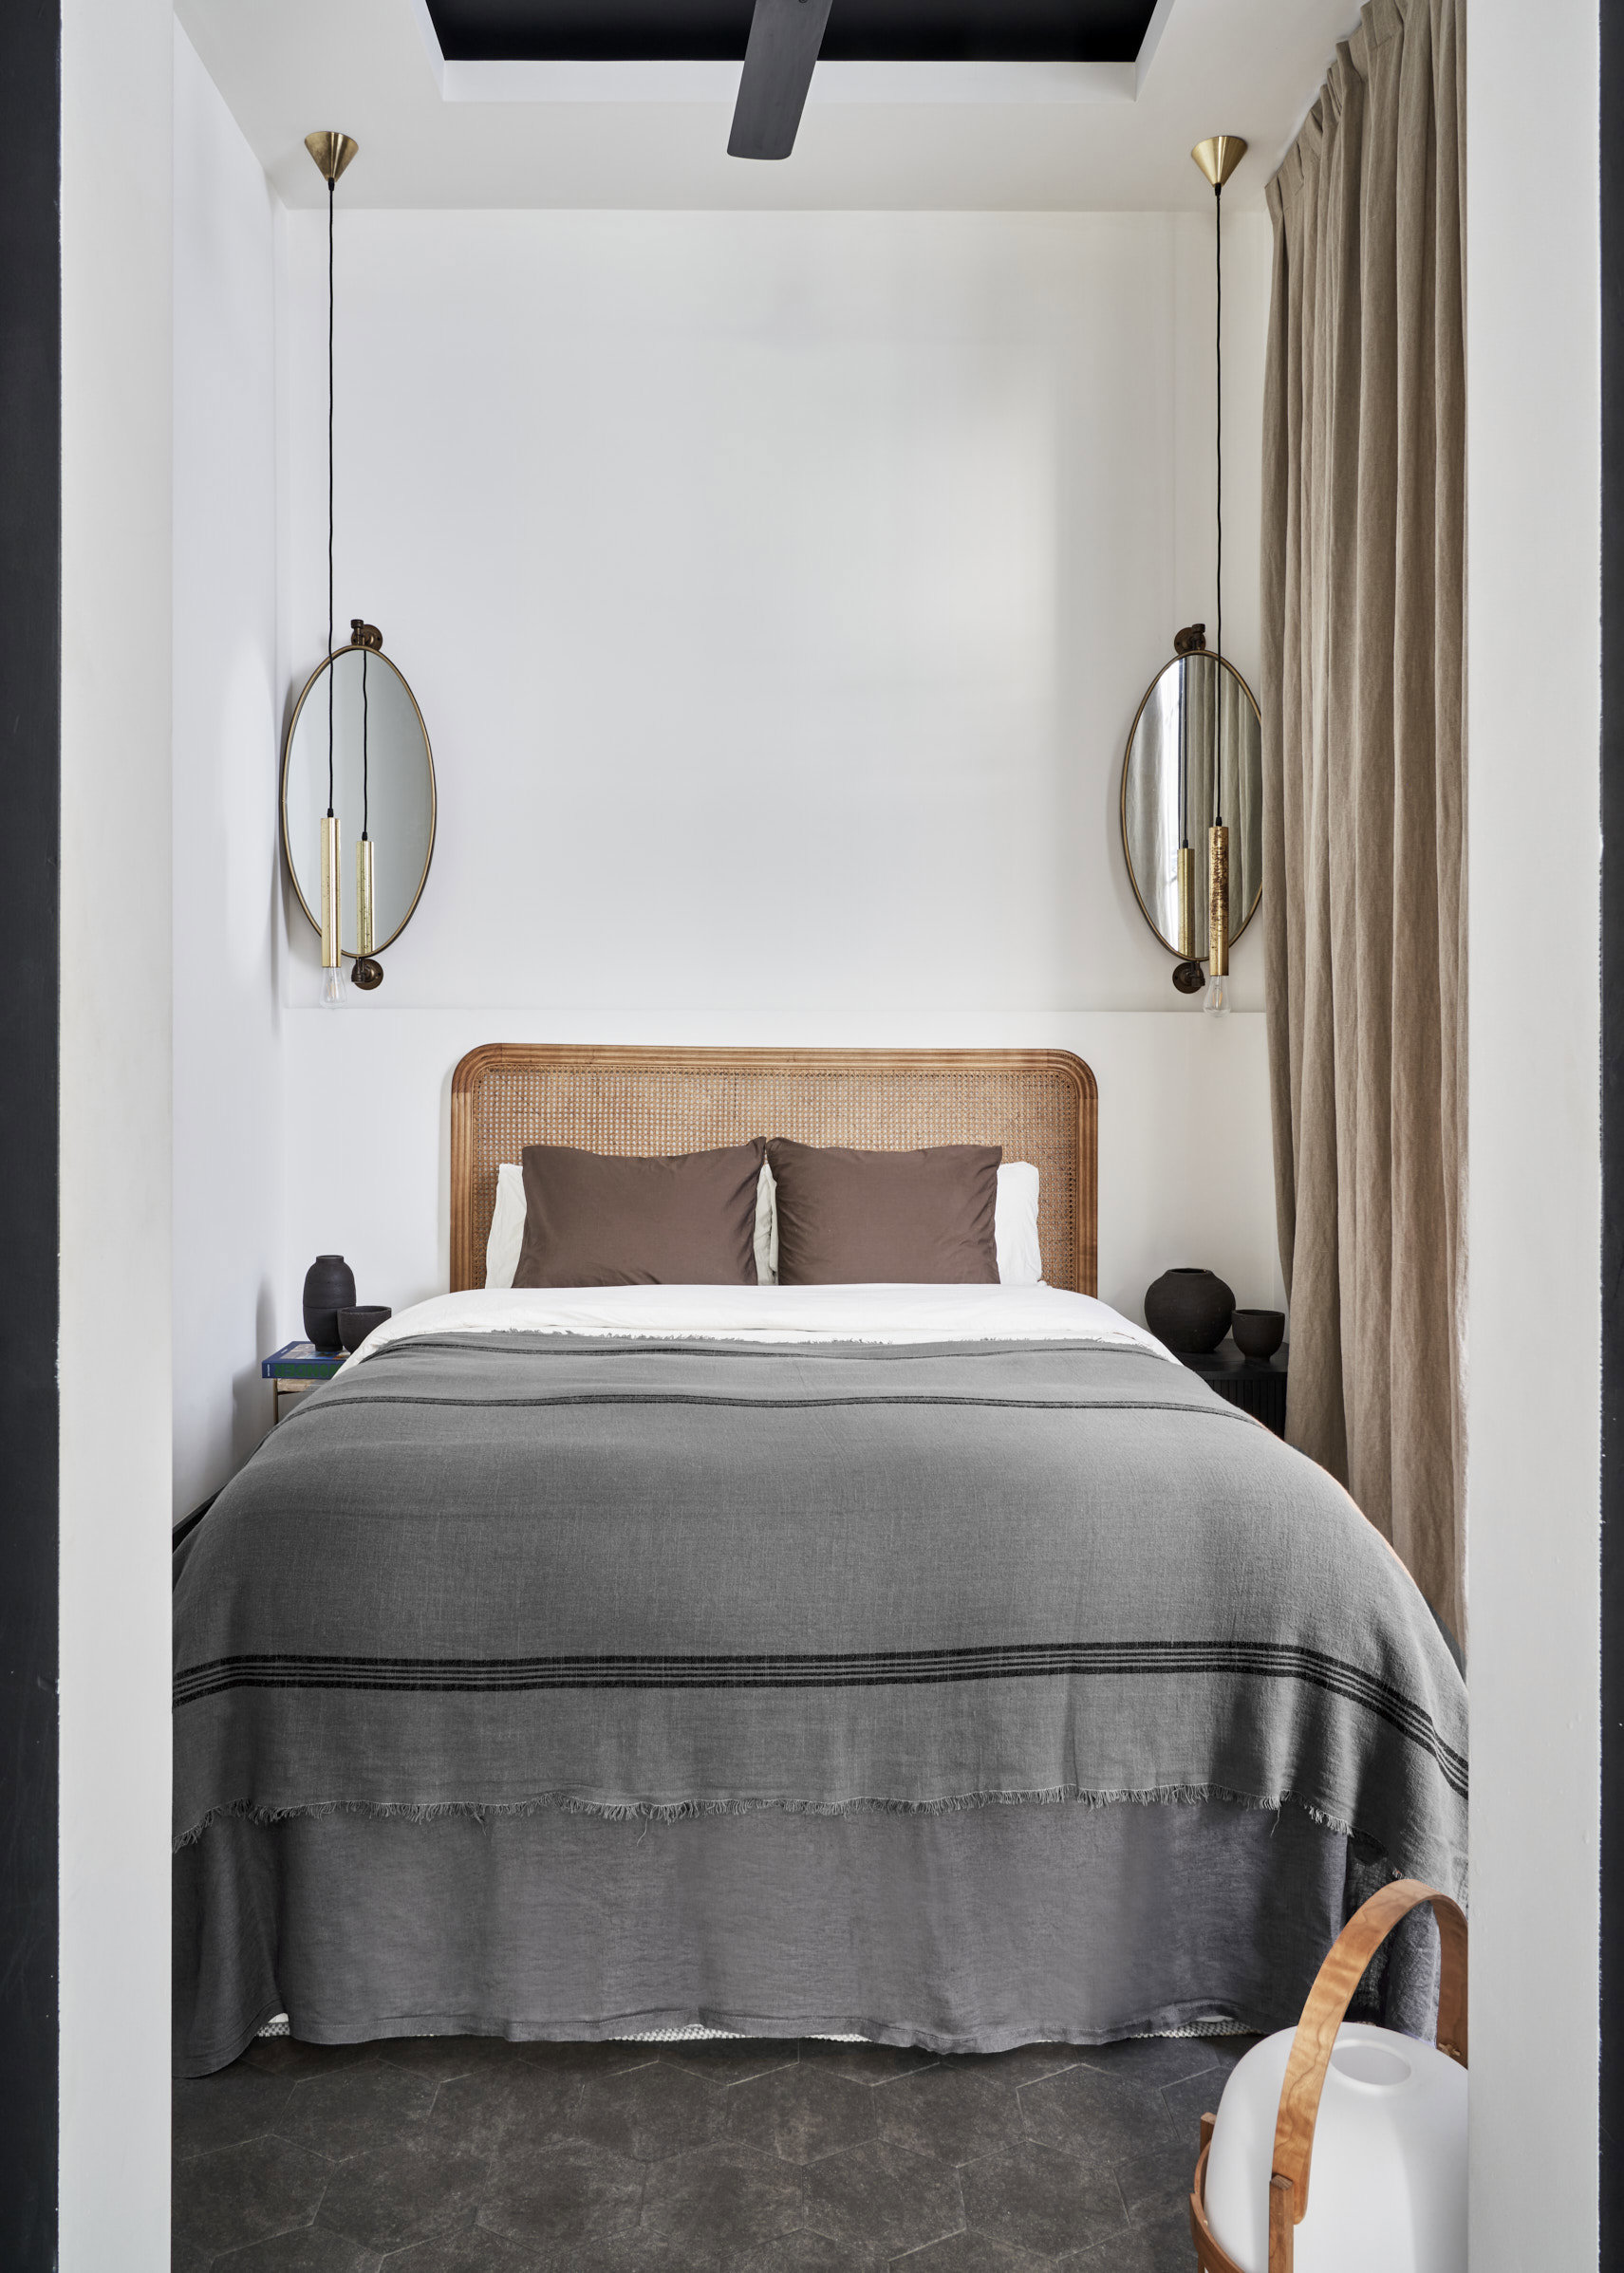 Dormitorio de cama de textil gris, espejos y lamparitas colgantes